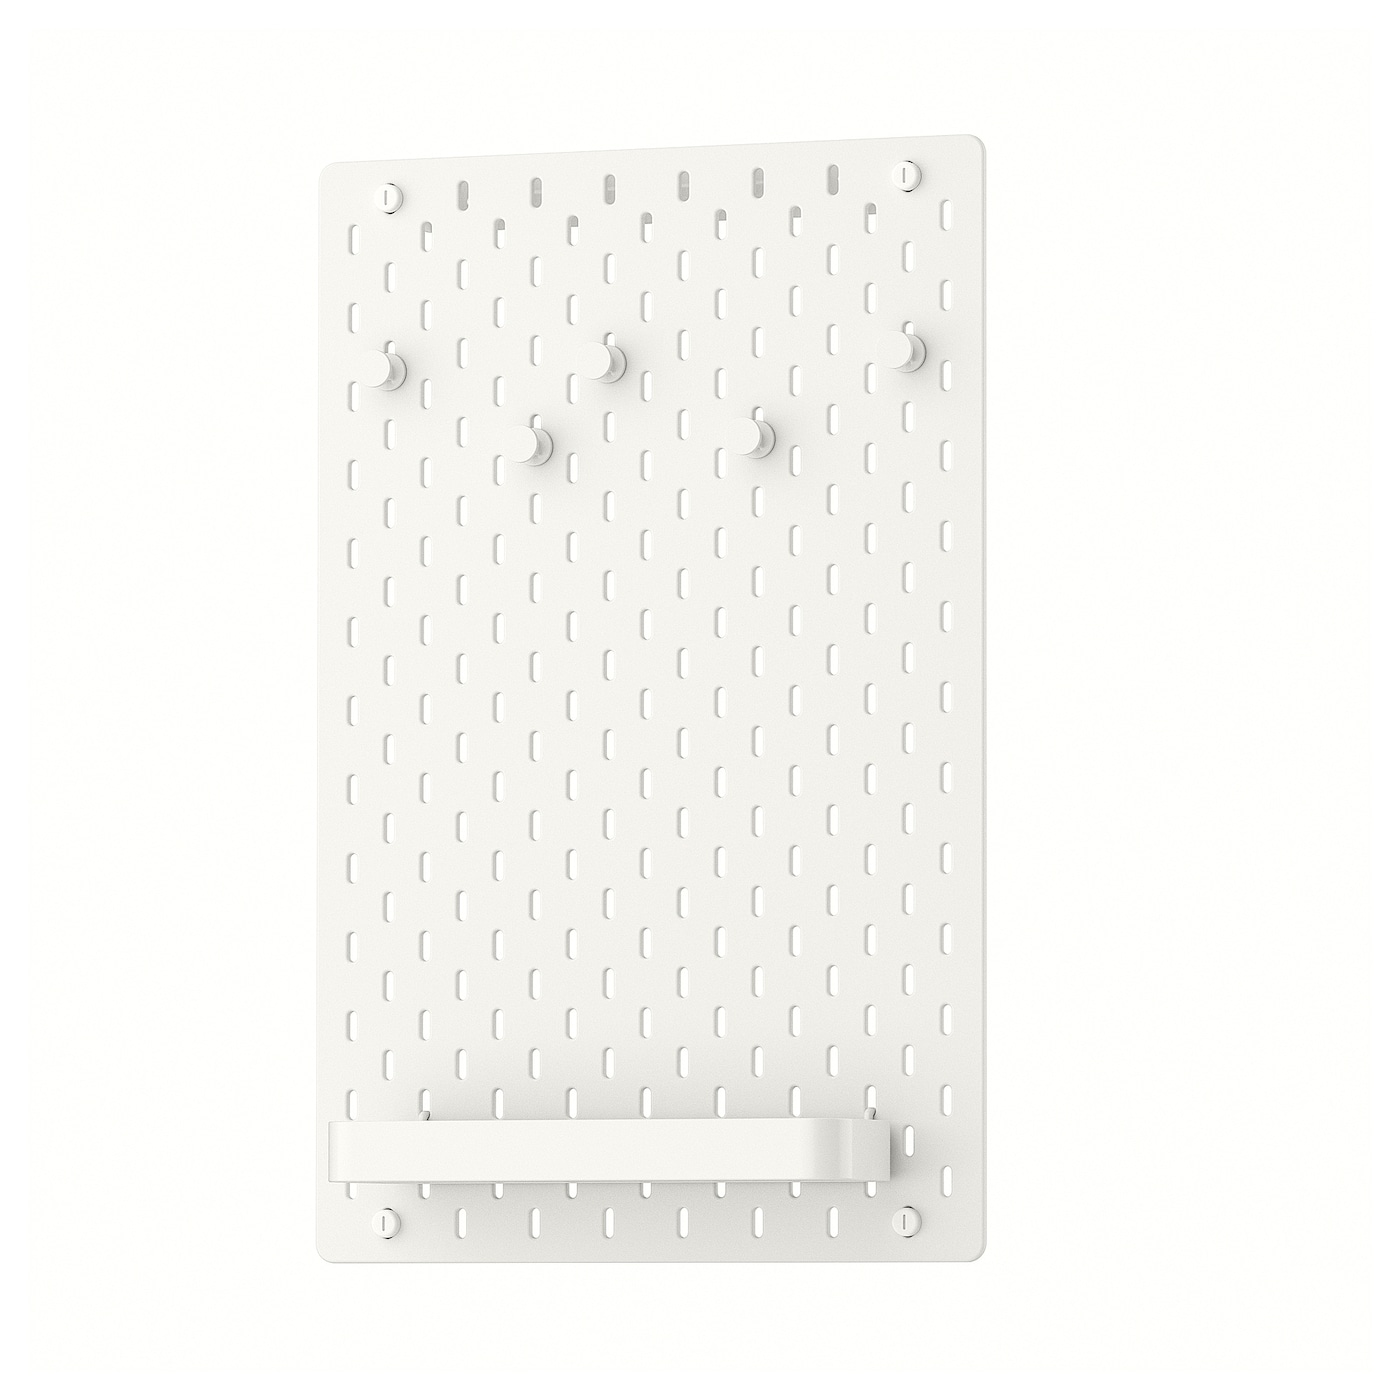 Комбинированная перфорированная доска  - SKÅDIS / SKАDIS IKEA/ СКОДИС ИКЕА,  36х56 см, белый